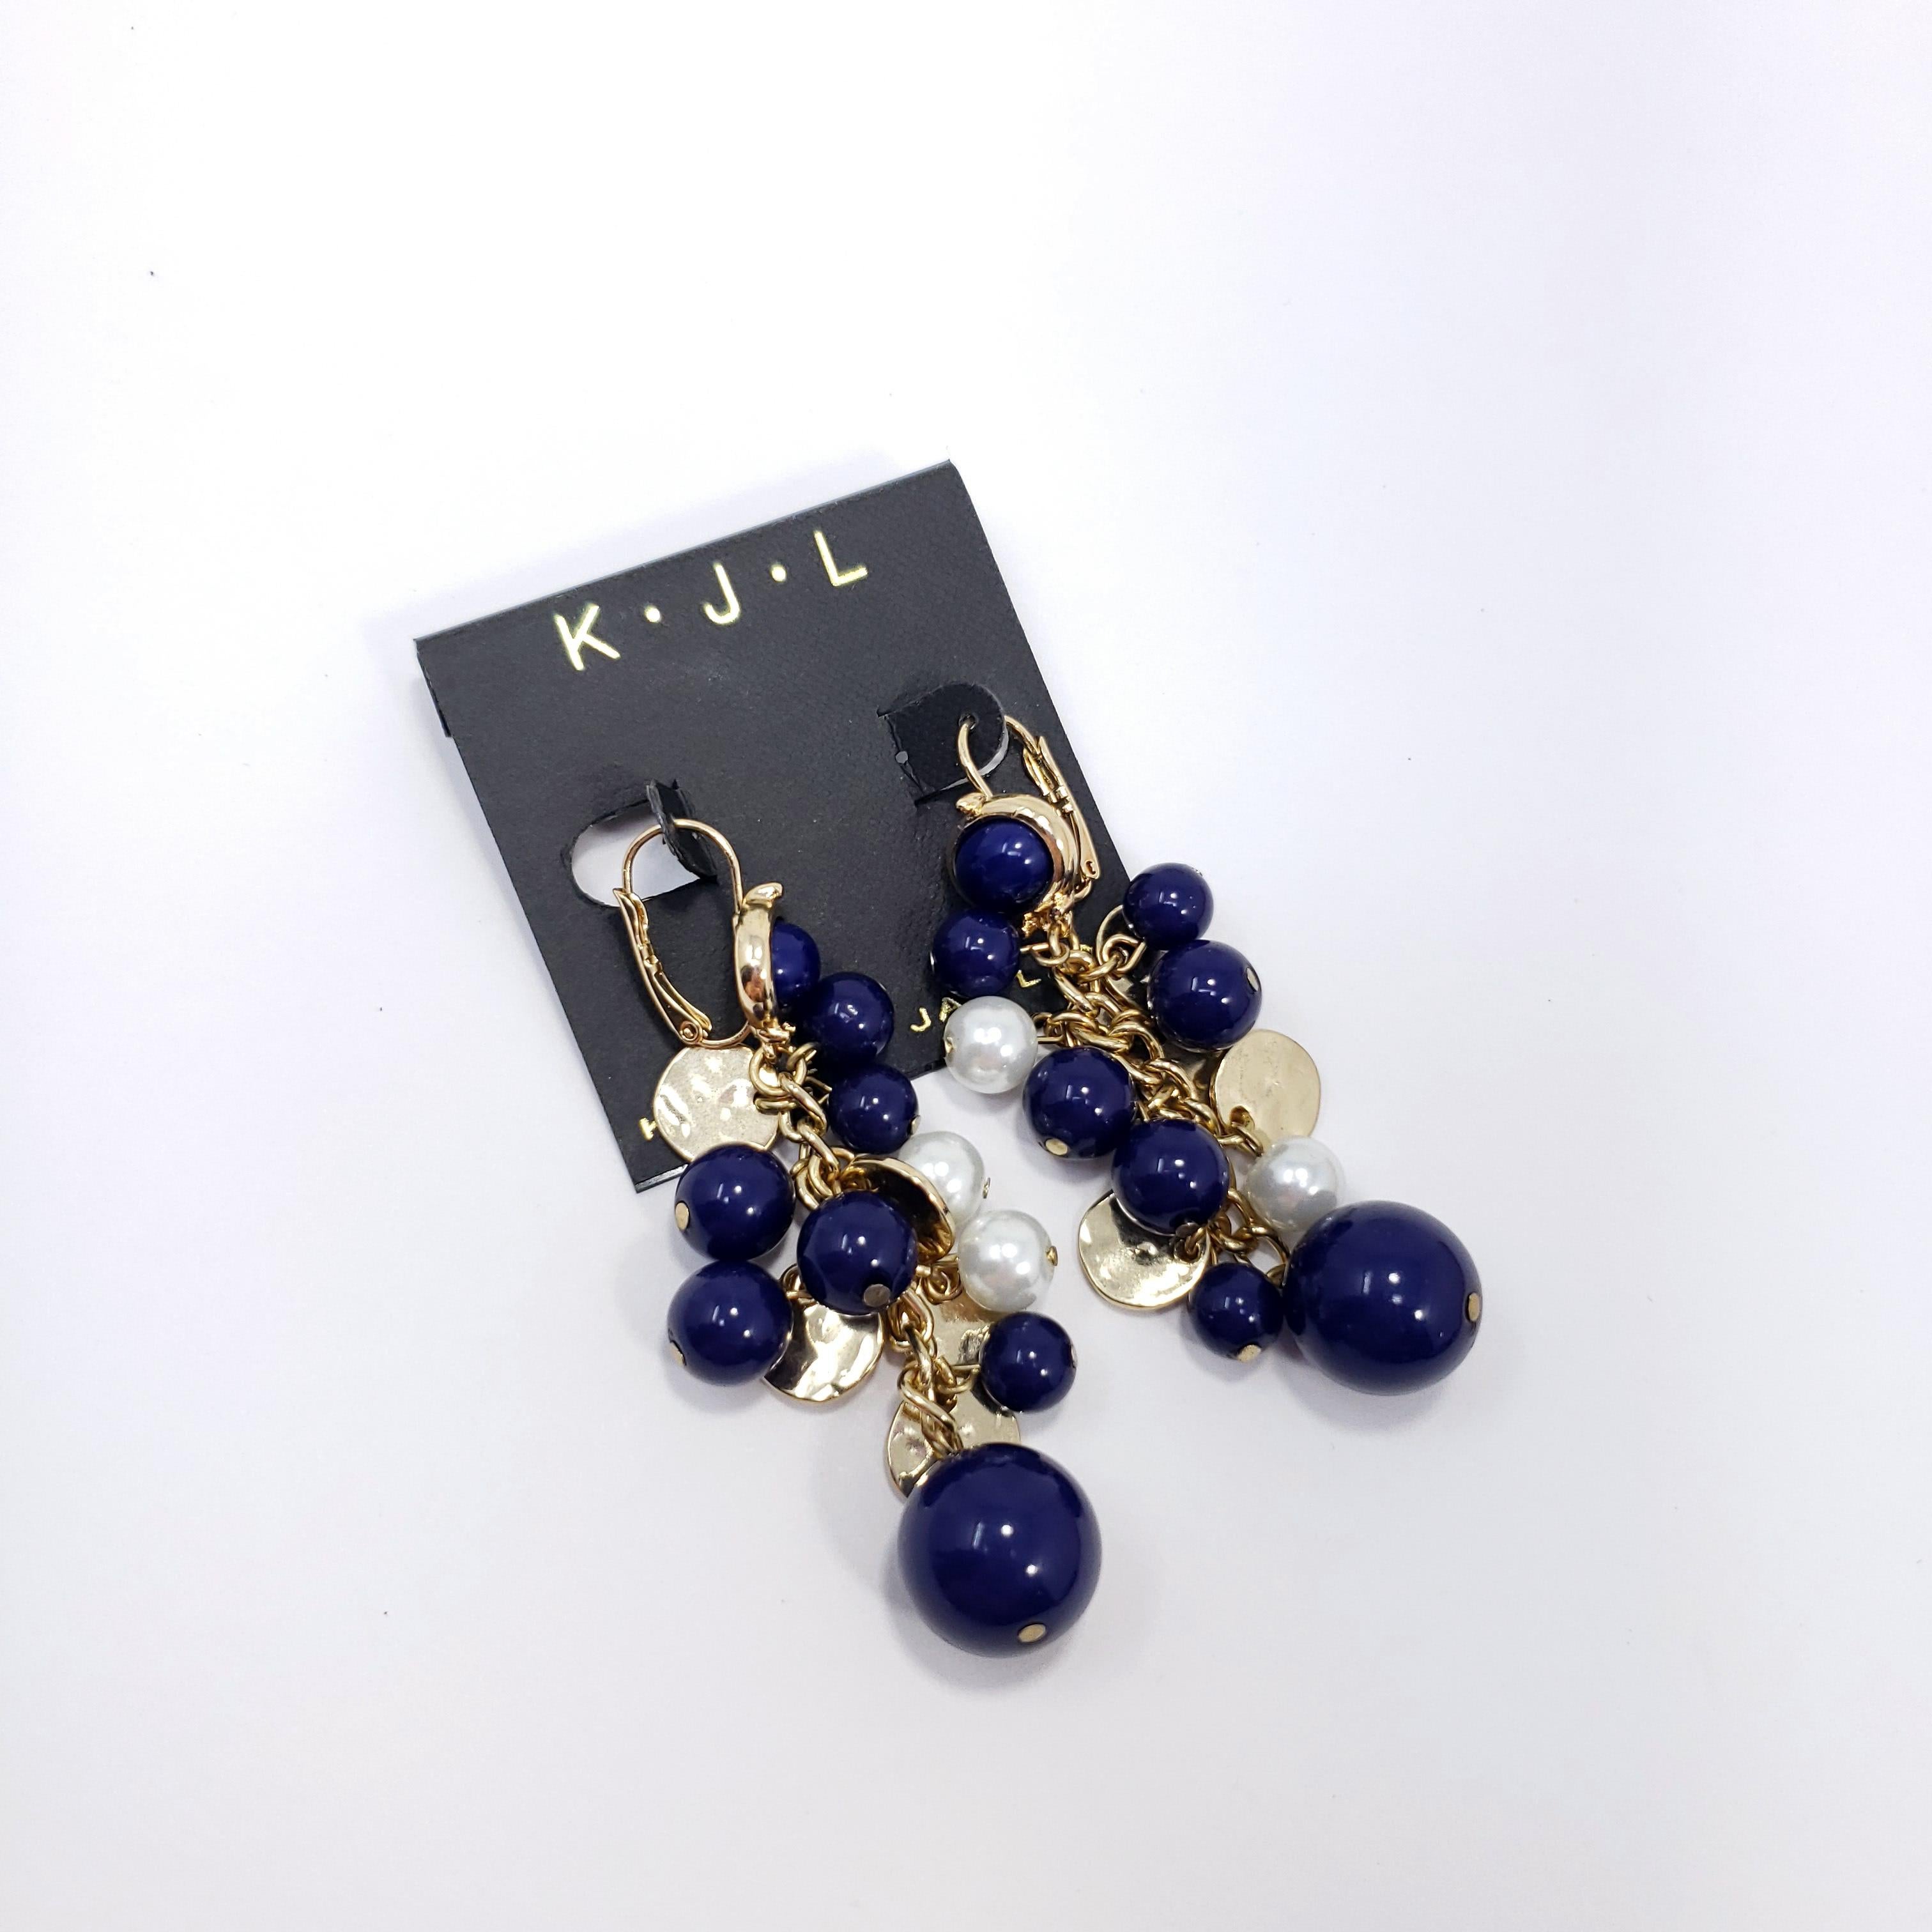 Elegantes Paar Cluster-Ohrringe von Kenneth Jay Lane. Diese vergoldeten Ohrringe mit Lapislazuliimitat und Perlen verleihen jedem Stil einen Hauch von Glamour.

Markenzeichen: Kenneth Lane